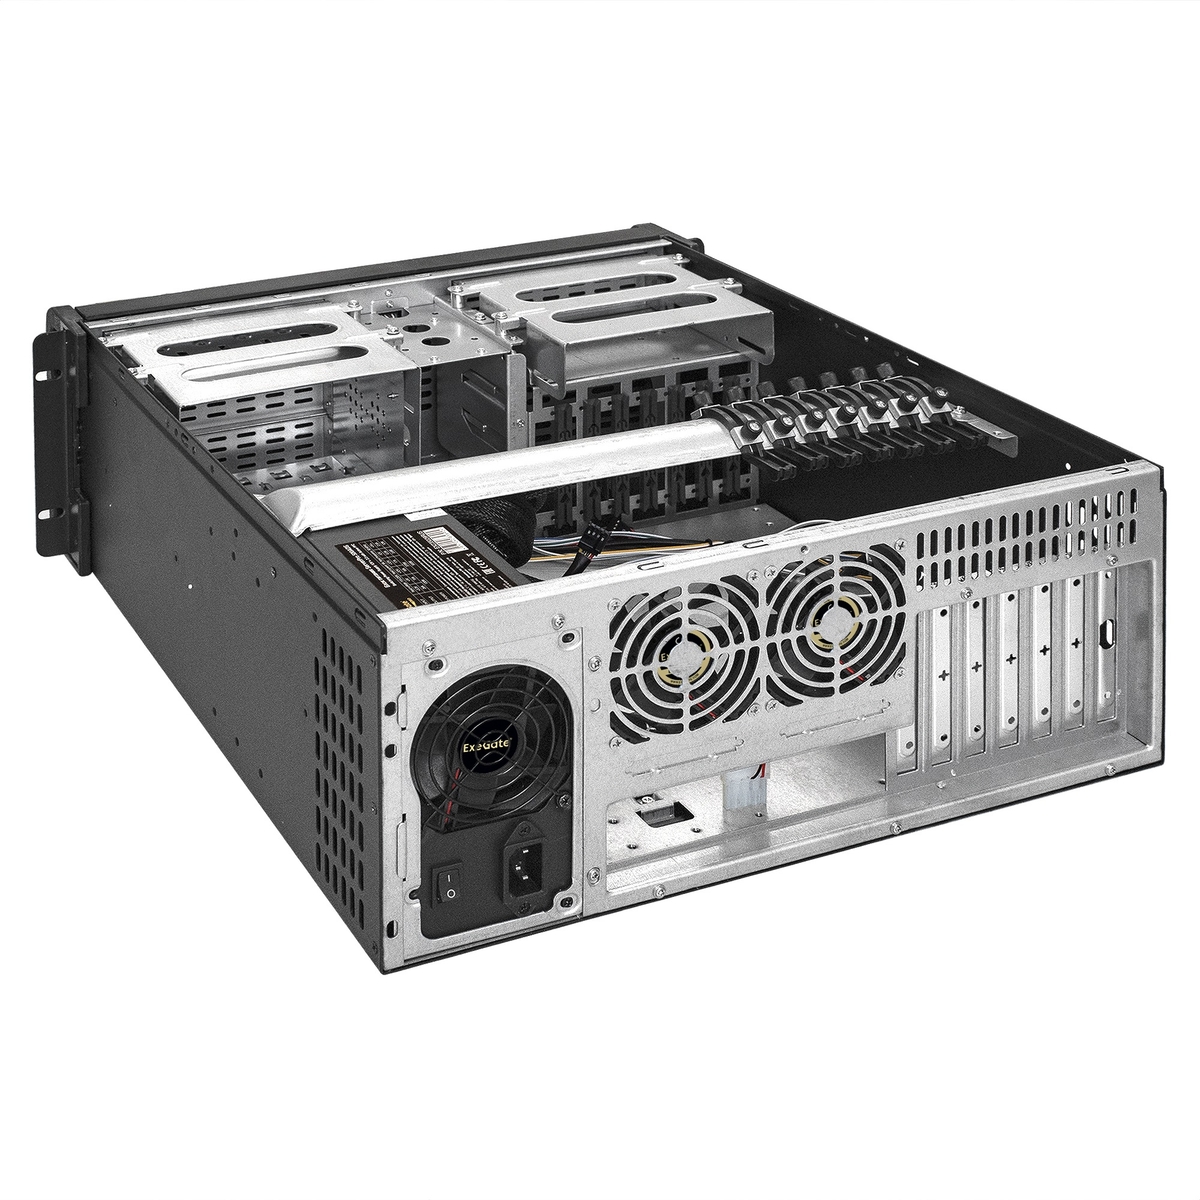 Серверный корпус ExeGate Pro 4U480-15/4U4132/600RADS